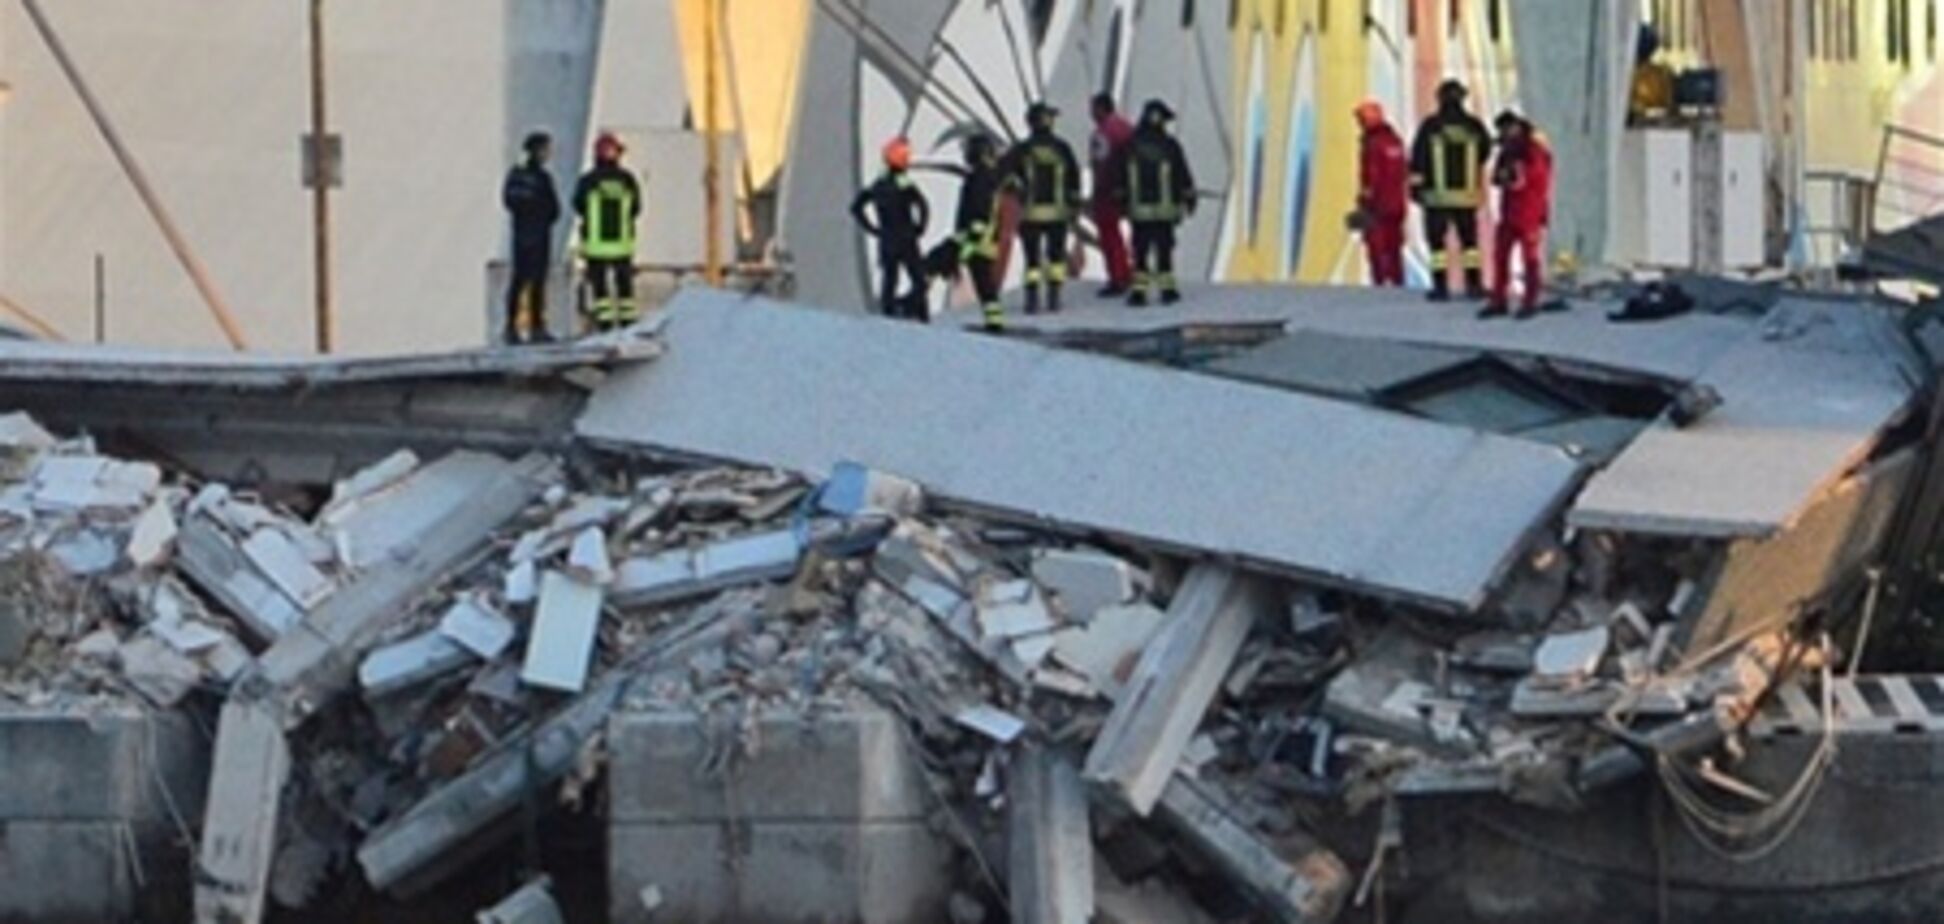 Кораблекрушение в Италии: 7 жертв, 4 пострадавших, 3 пропавших